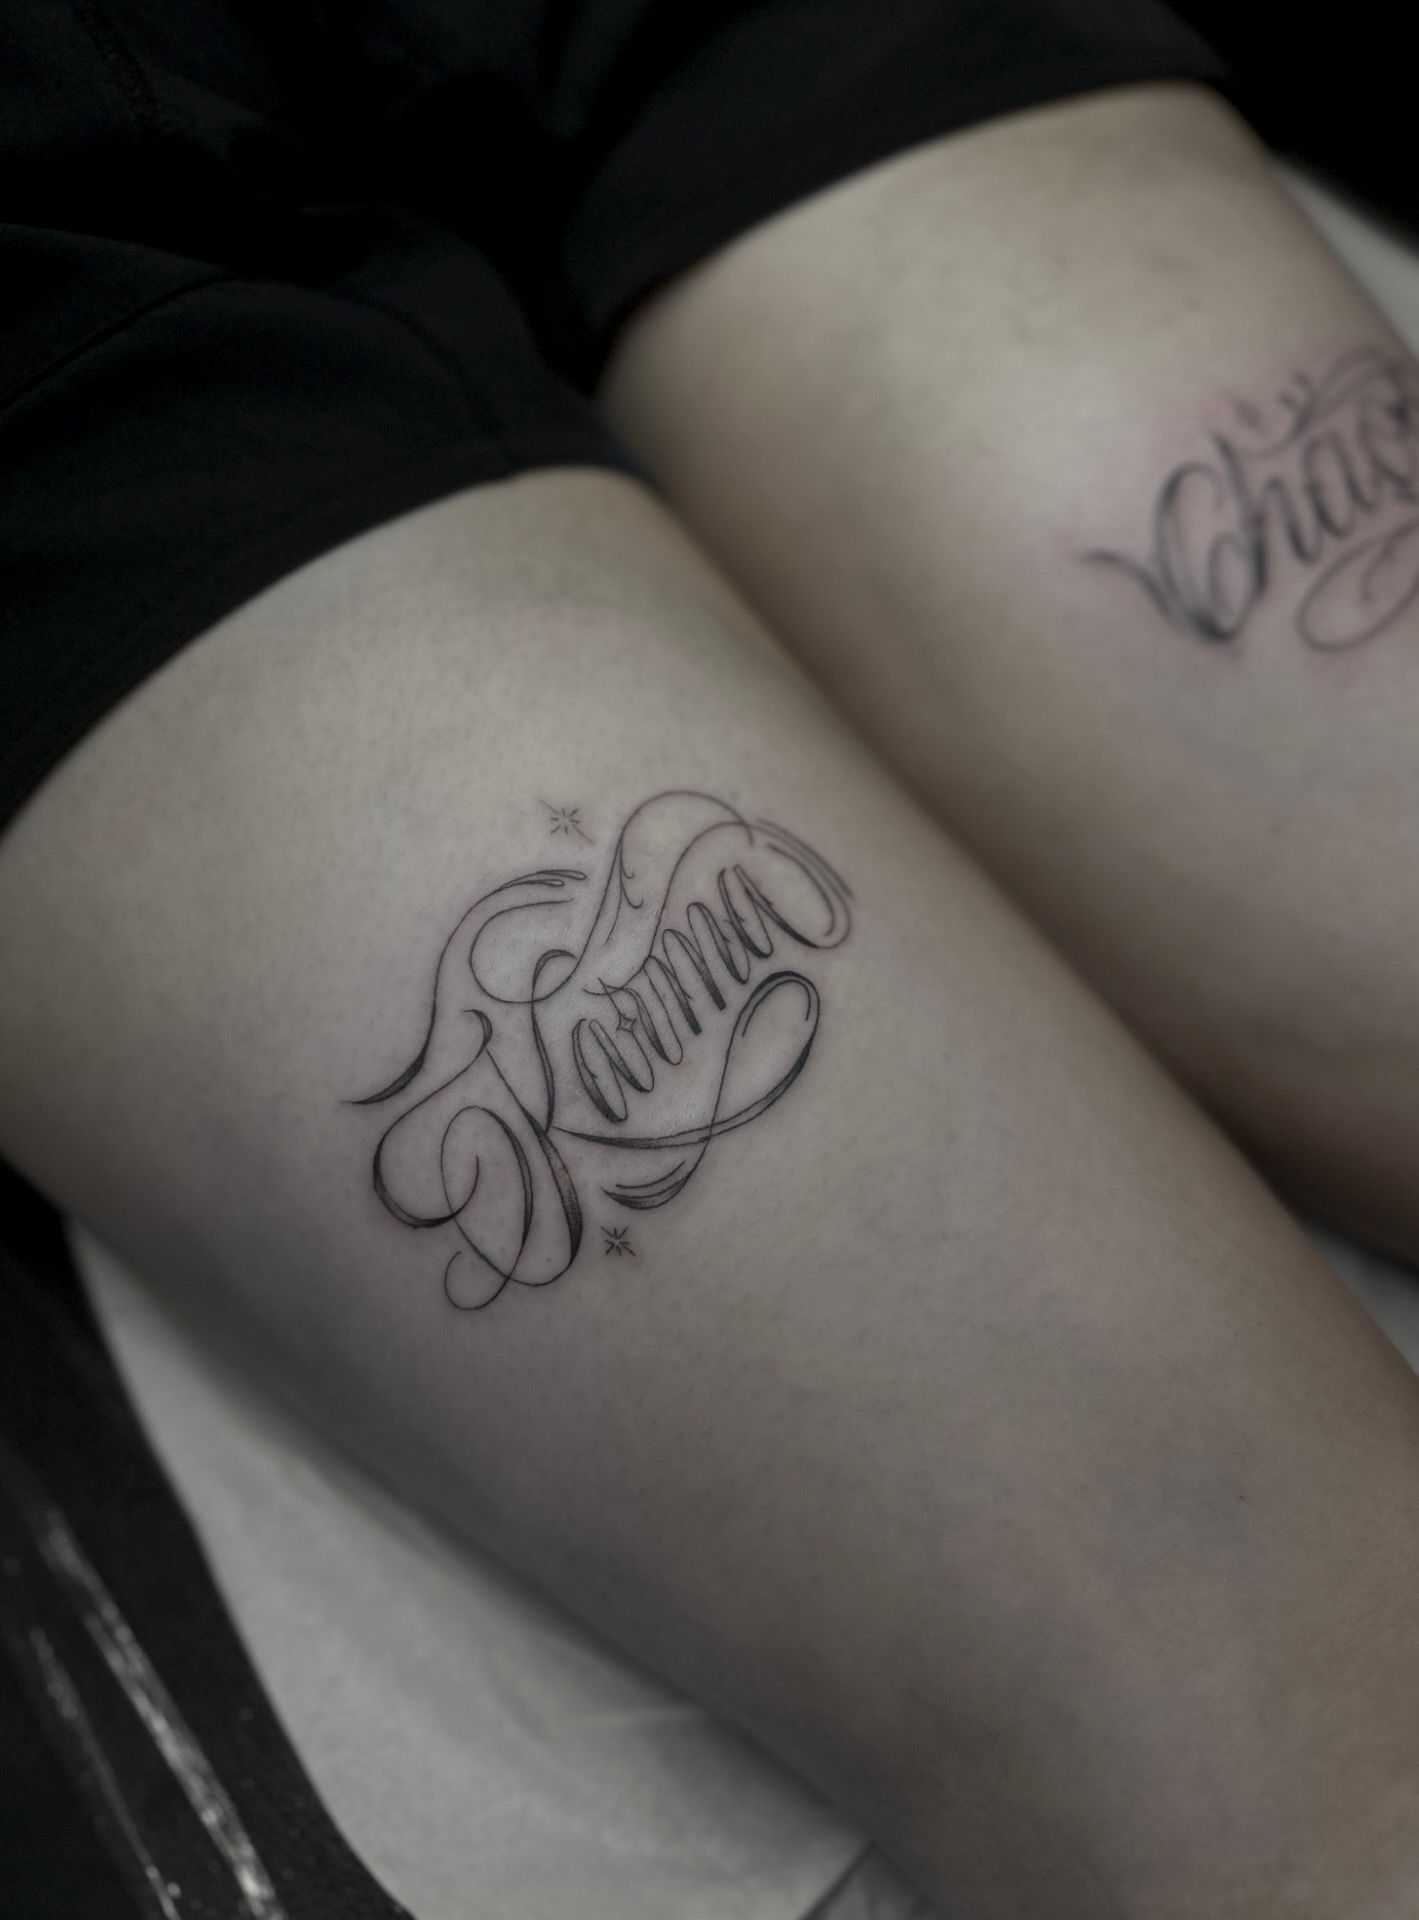 Karma tattoo design by WillemXSM on DeviantArt